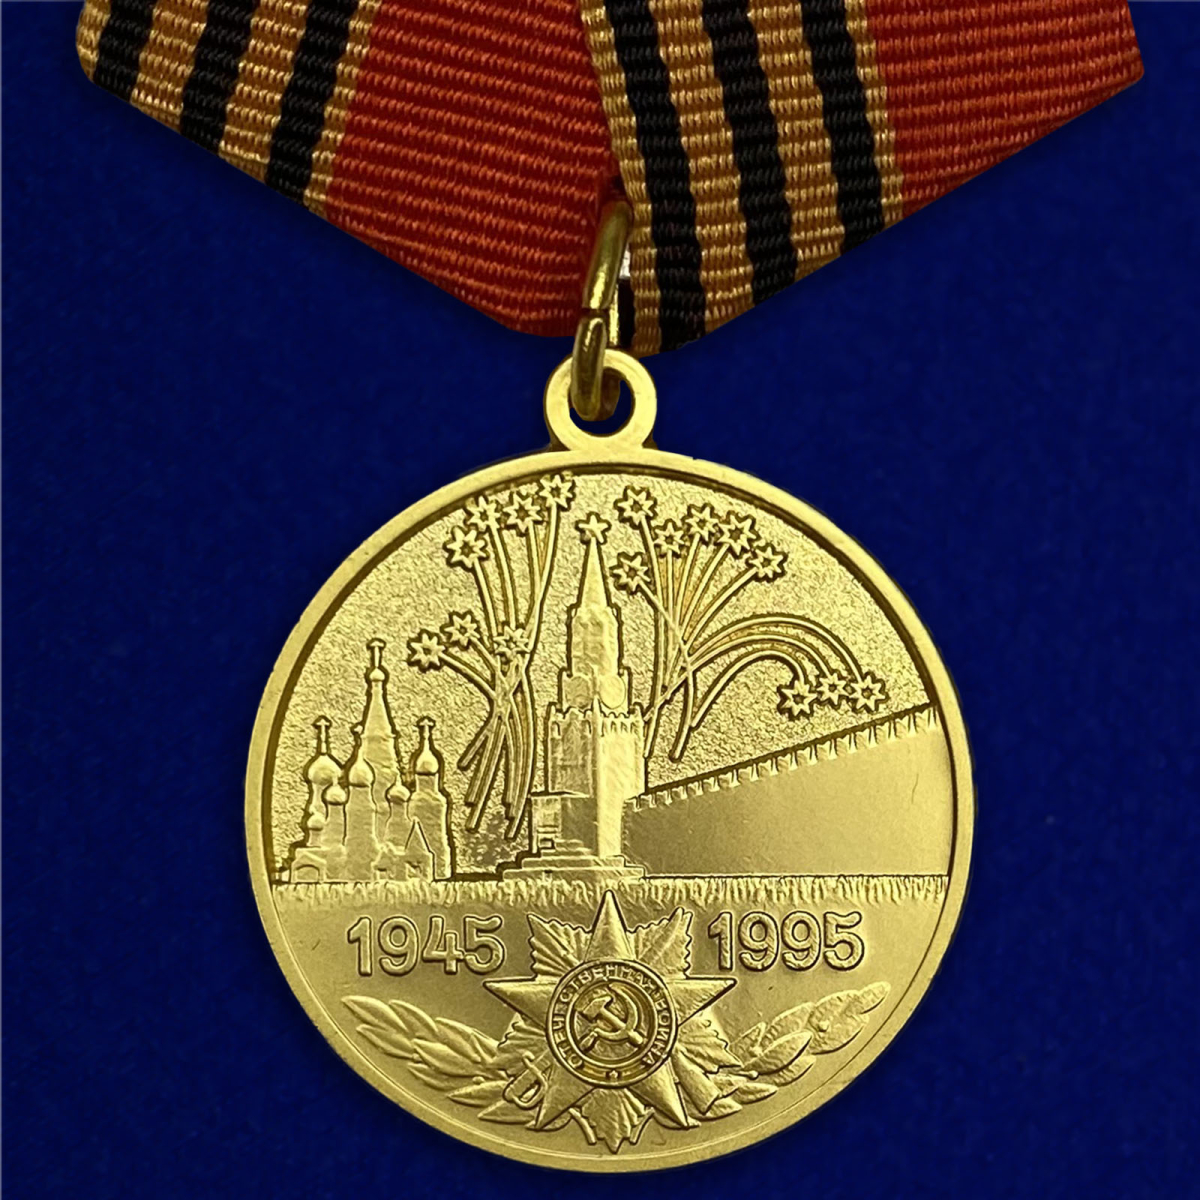 Сувенирная медаль Kamukamu 701605, 50 лет Победы в Великой Отечественной войне 1941-1945